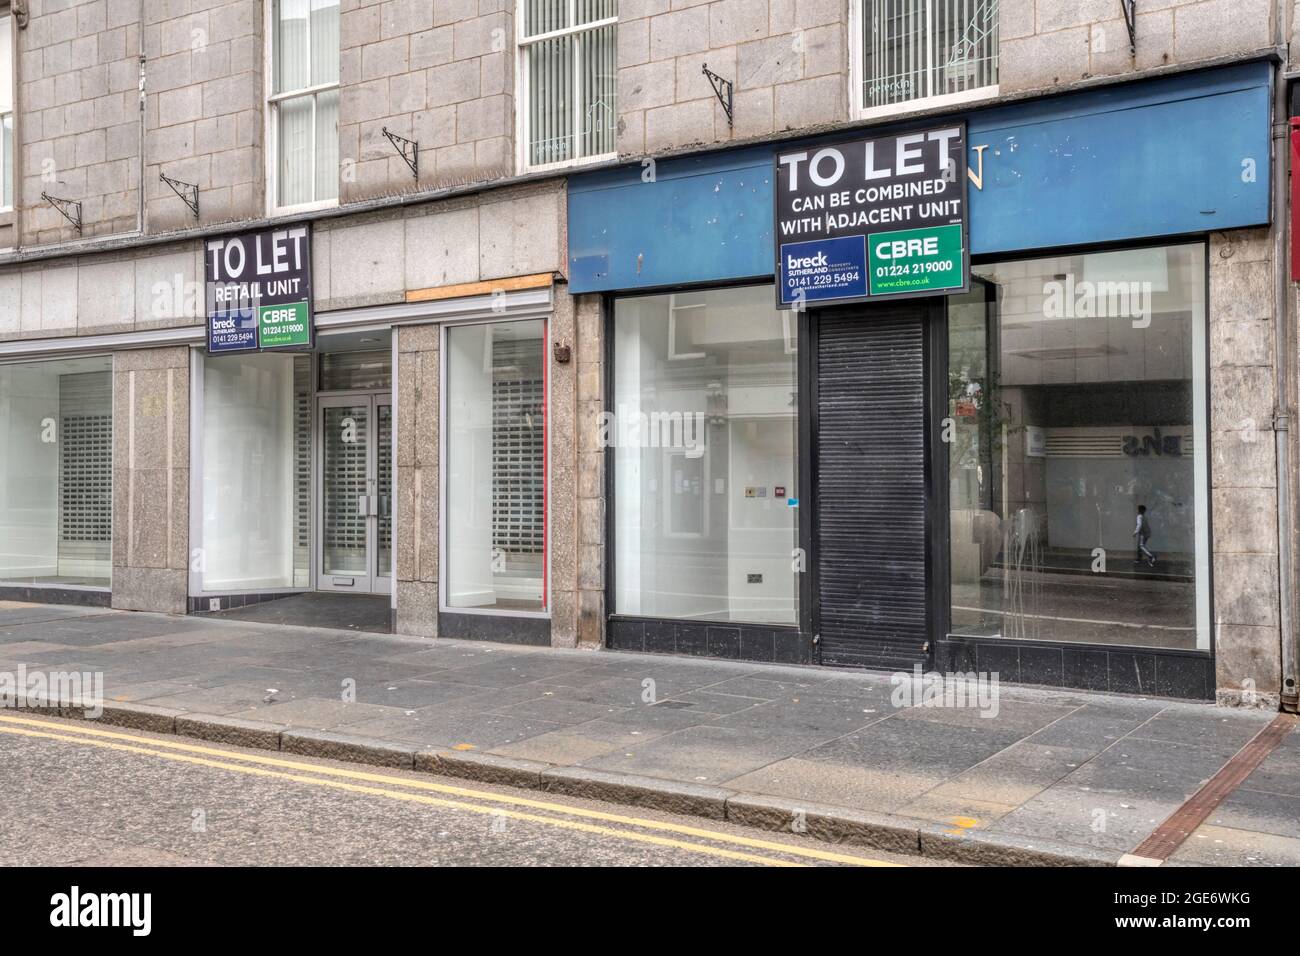 Zwei benachbarte leerstehende Geschäfte in der Union Street, Aberdeen. Ein „To Let“-Schild sagt, dass die beiden Räumlichkeiten kombiniert werden können. Stockfoto